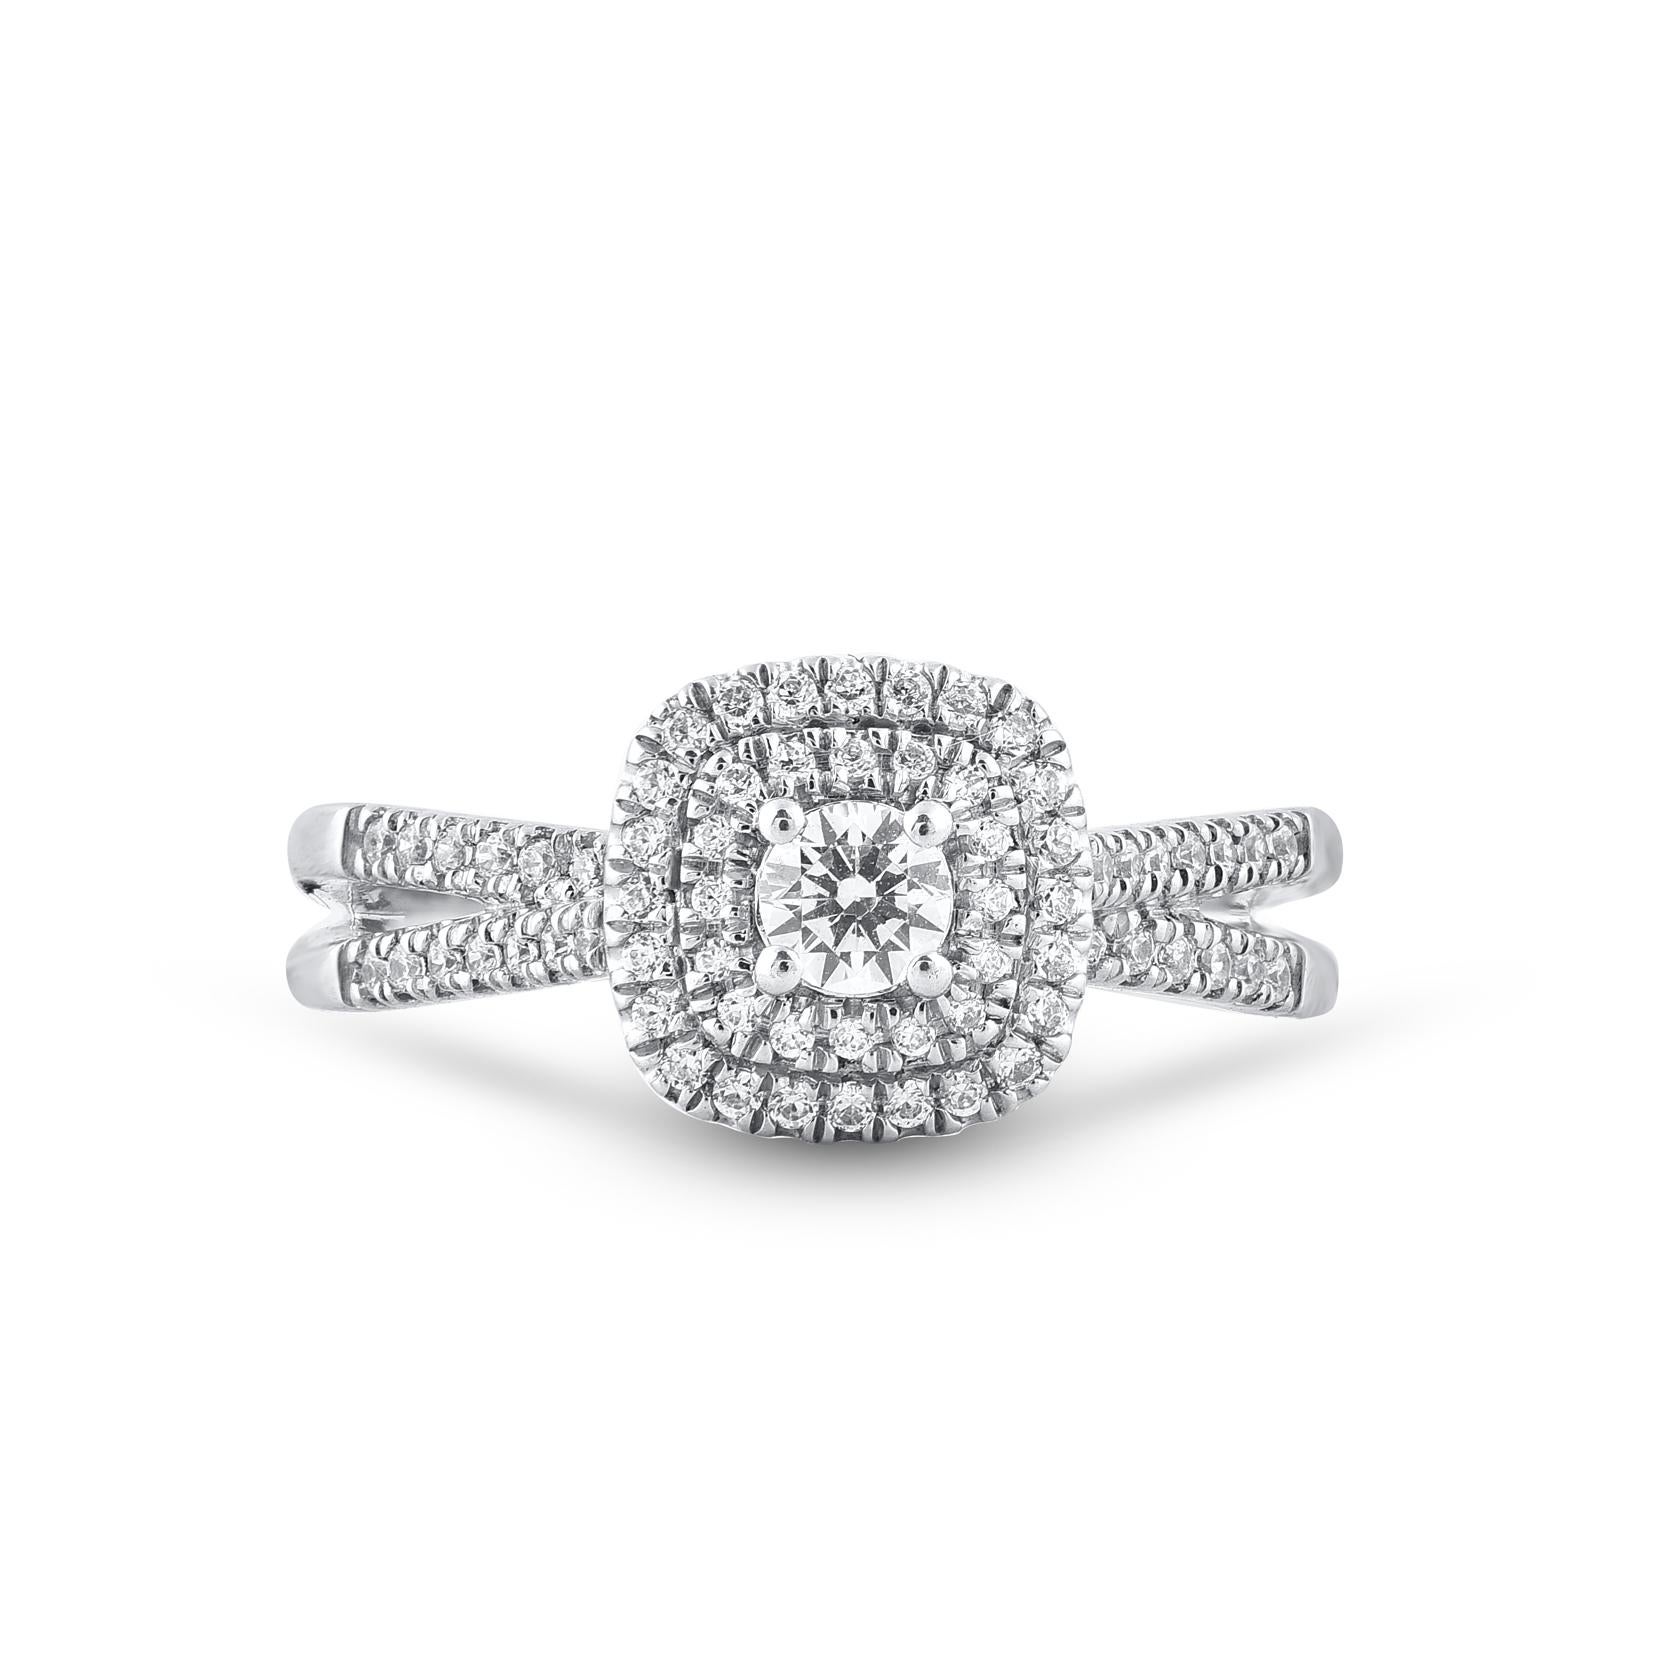 Dieser wahrhaft exquisite Diamantring zum Jahrestag wird wegen seiner klassischen Schönheit und Eleganz bewundert werden. Dieser Ring ist aus 14KT Weißgold gefertigt und mit 71 natürlichen Diamanten im Einzel- und Brillantschliff in Zackenfassung